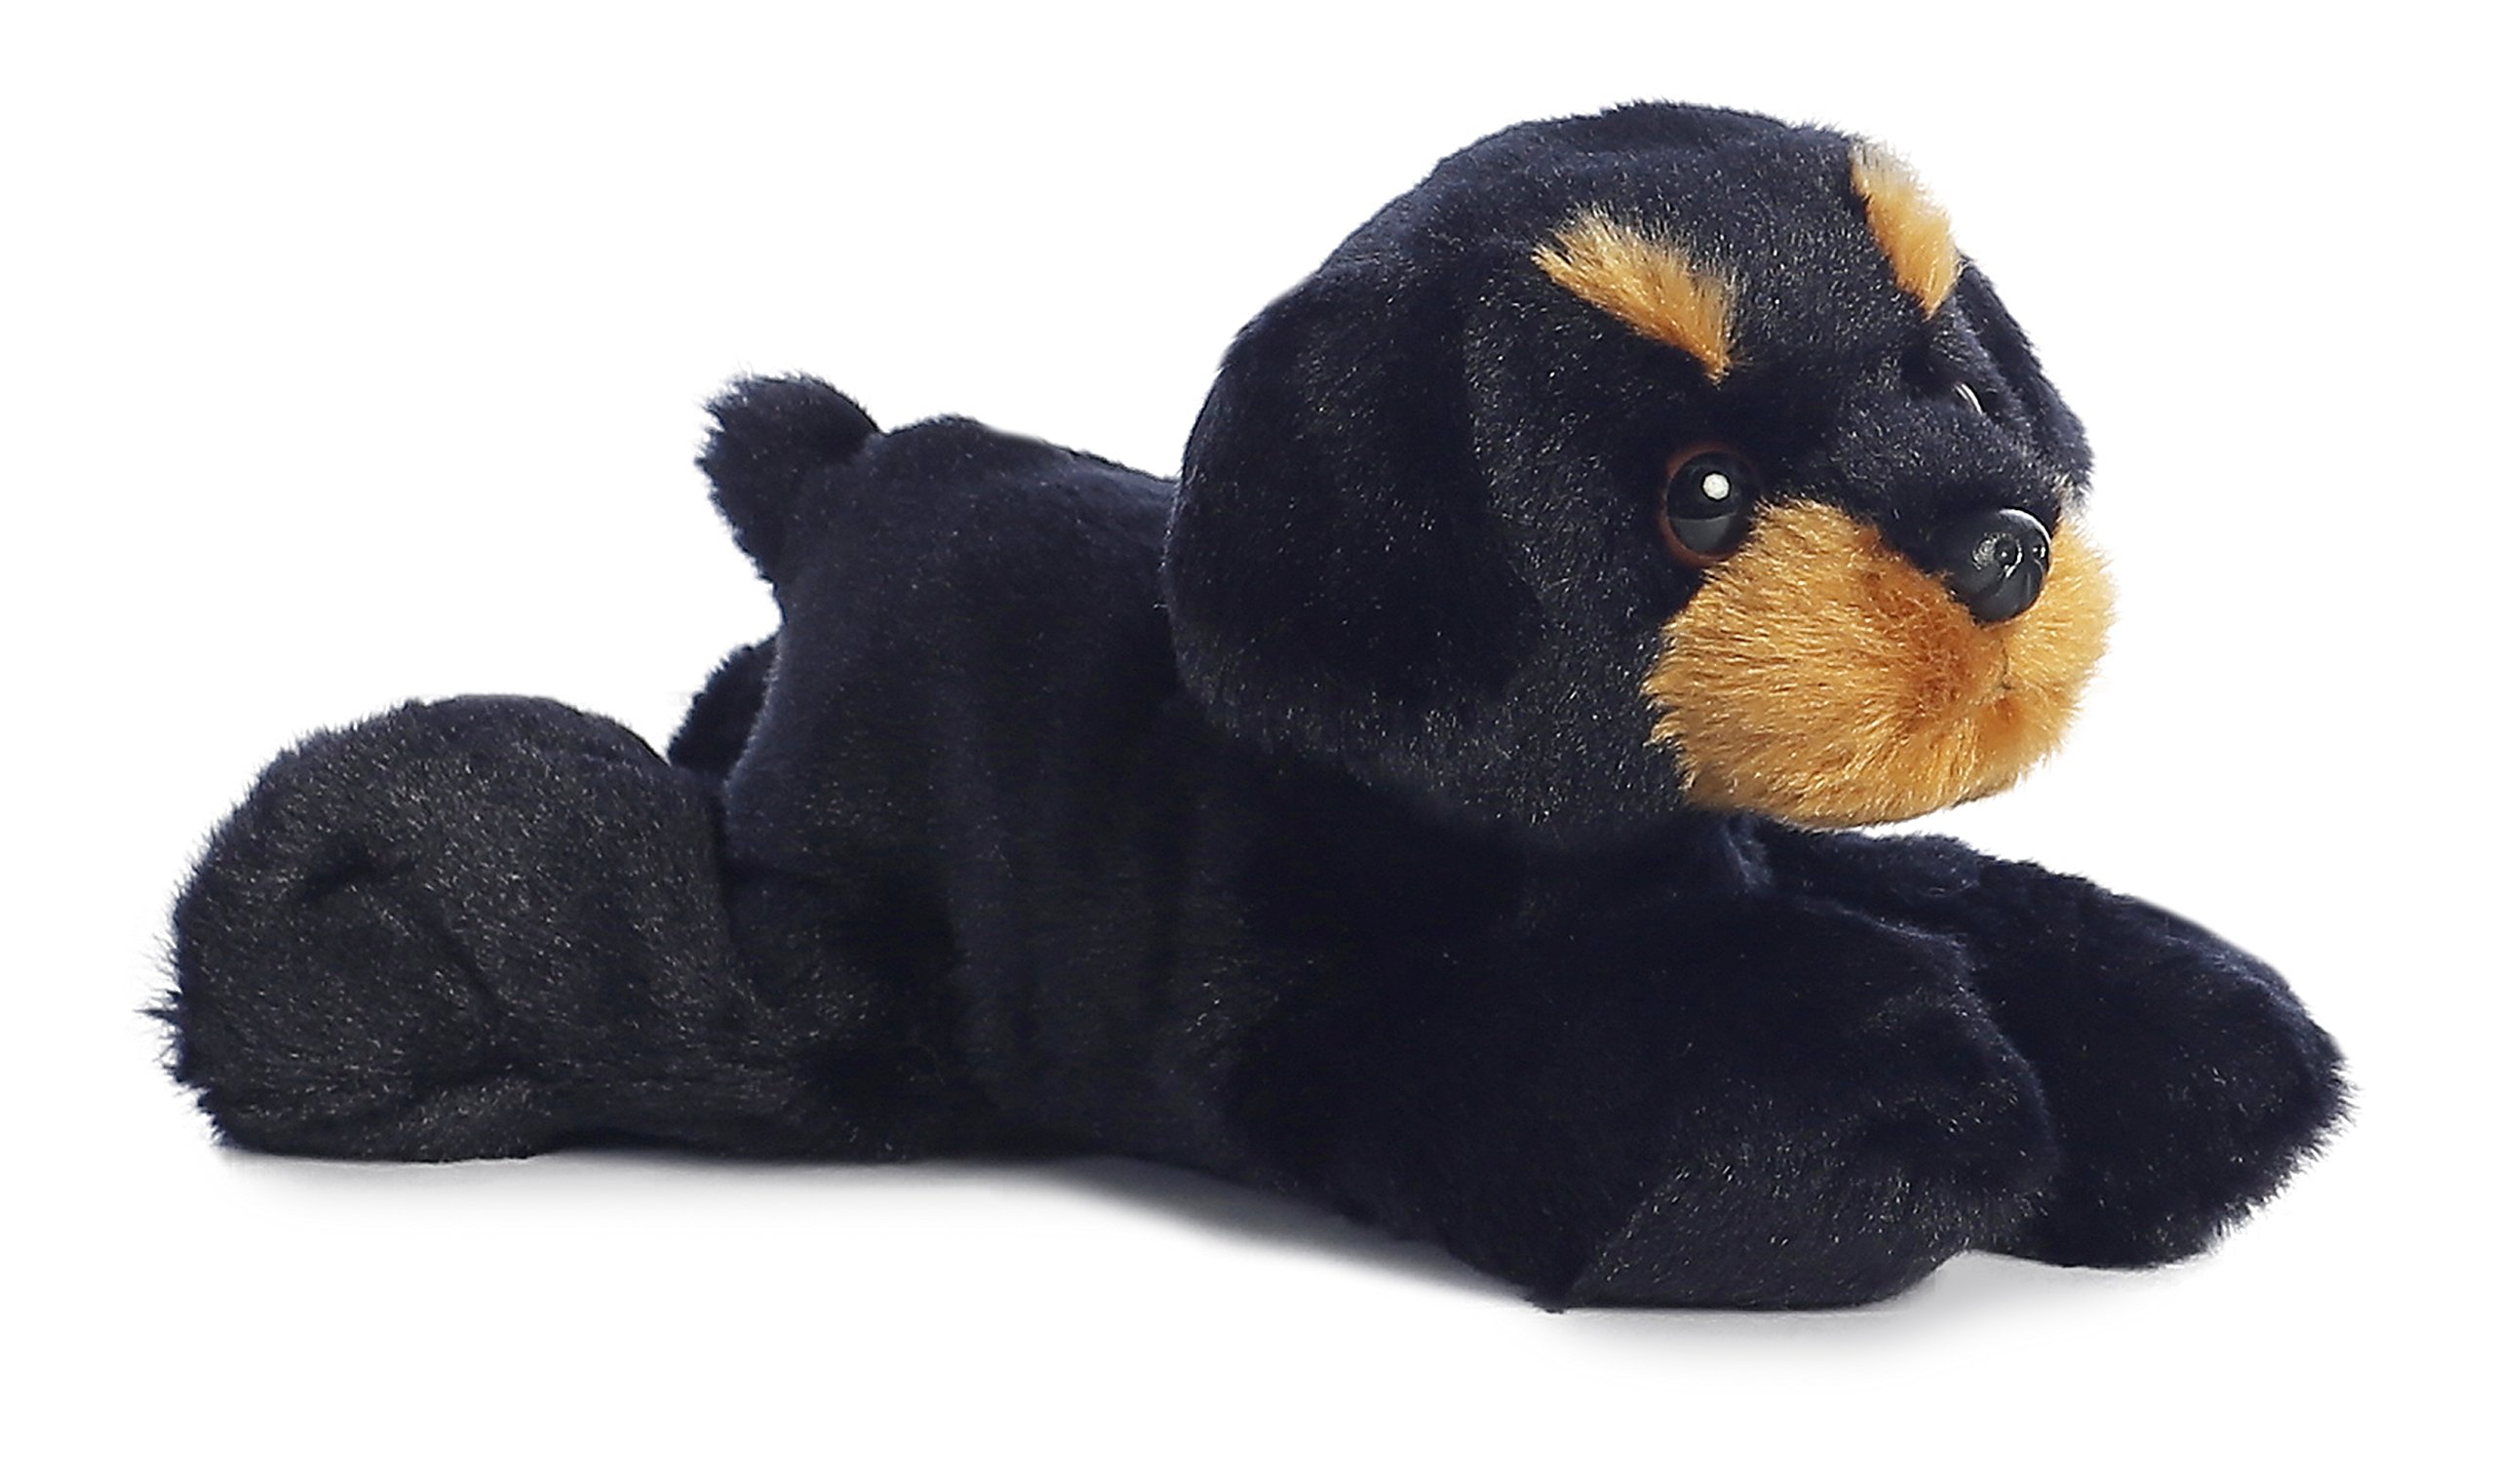 8" Aurora Adorable Mini Flopsie Raina Stuffed Animal (Black Dog) $4.03 + Free Shipping w/ Prime or on $35+